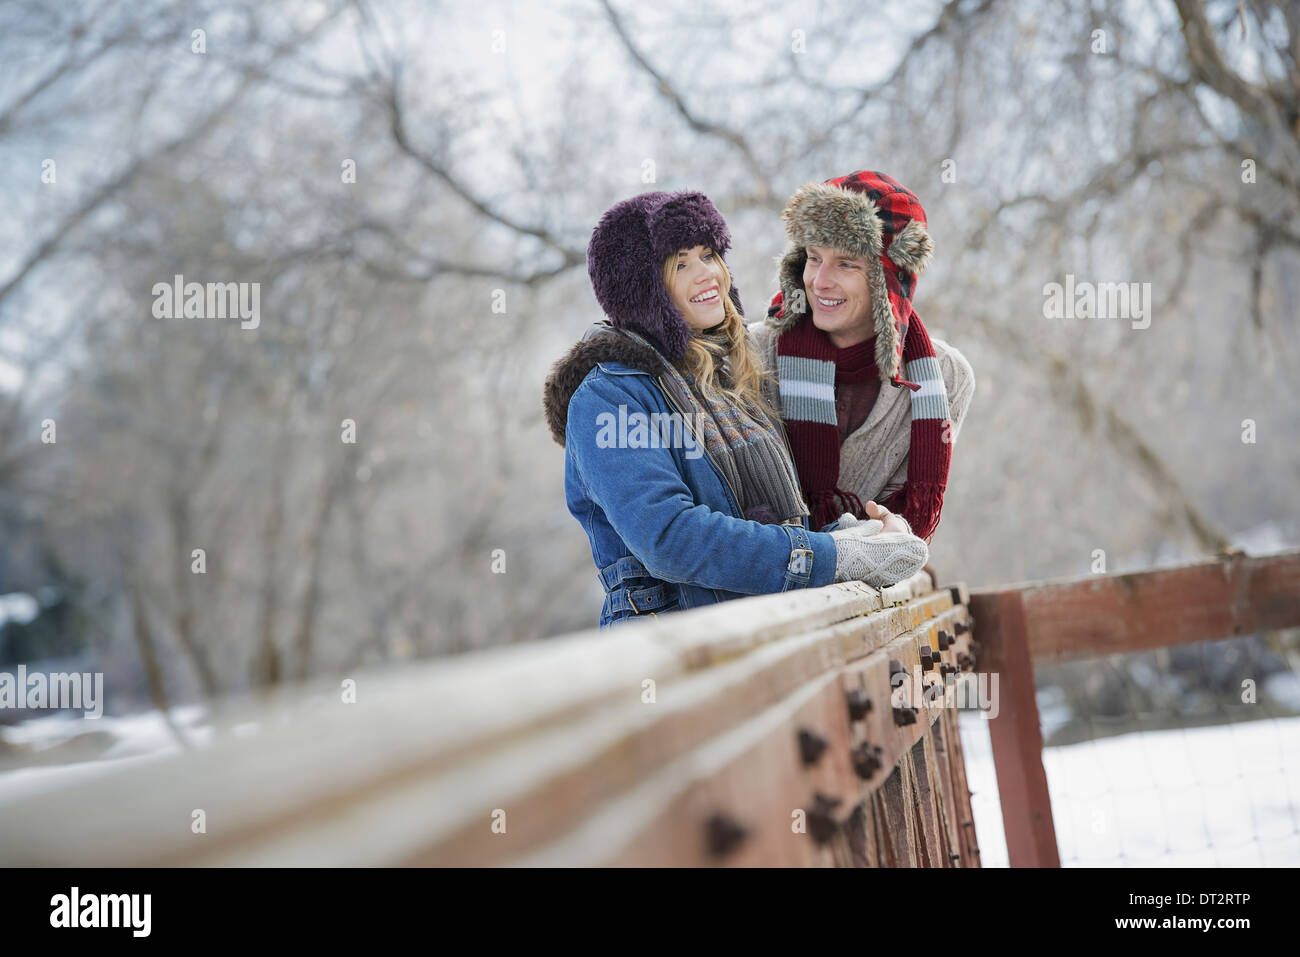 Paesaggio invernale con neve sul terreno una coppia giovane uomo e donna giovane appoggiato su di una recinzione Foto Stock